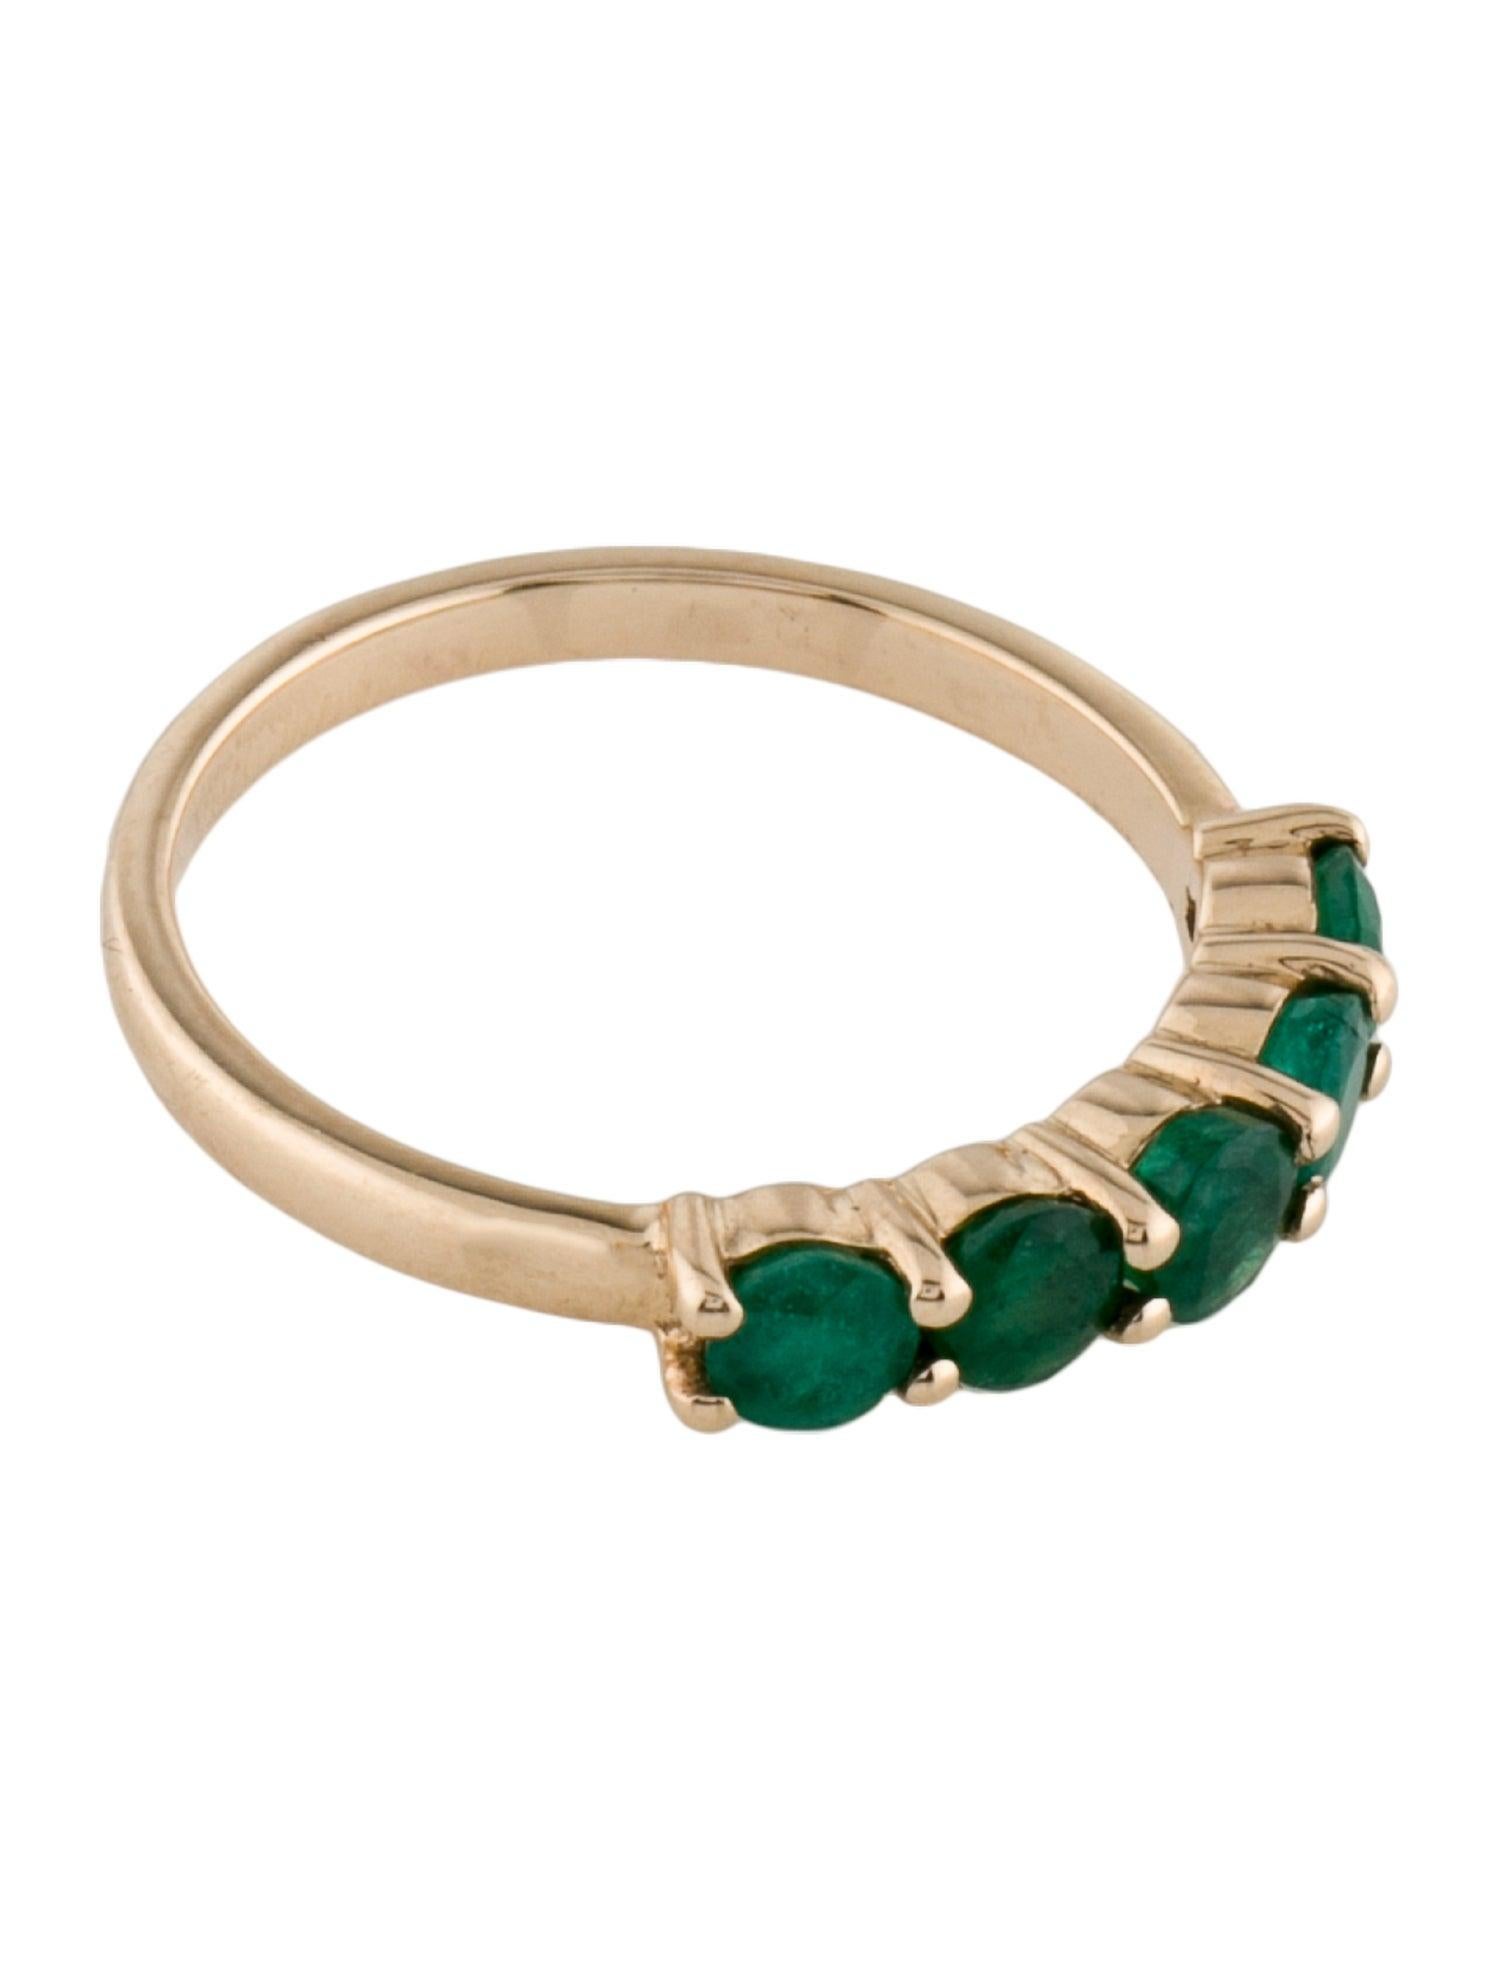 Tauchen Sie ein in die Anziehungskraft der Natur mit unserem Forest Ferns Emerald Ring aus der renommierten Jeweltique Collection. Dieser exquisite Ring ist ein Zeugnis der natürlichen Schönheit und Eleganz, die uns umgibt, und fängt die Essenz